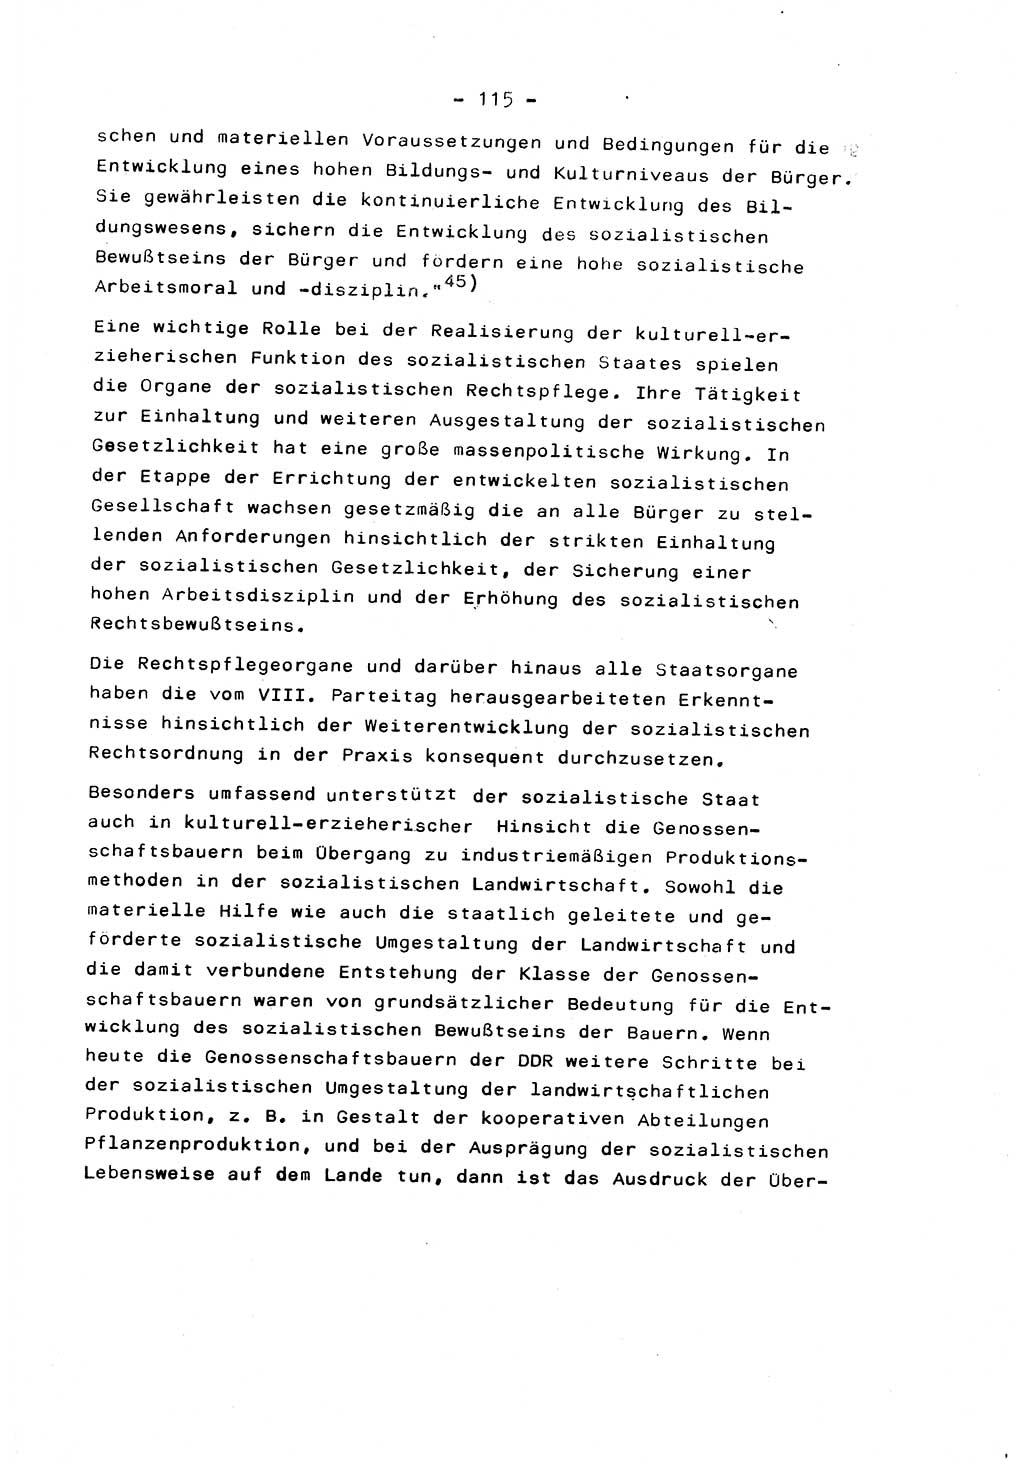 Marxistisch-leninistische Staats- und Rechtstheorie [Deutsche Demokratische Republik (DDR)] 1975, Seite 115 (ML St.-R.-Th. DDR 1975, S. 115)